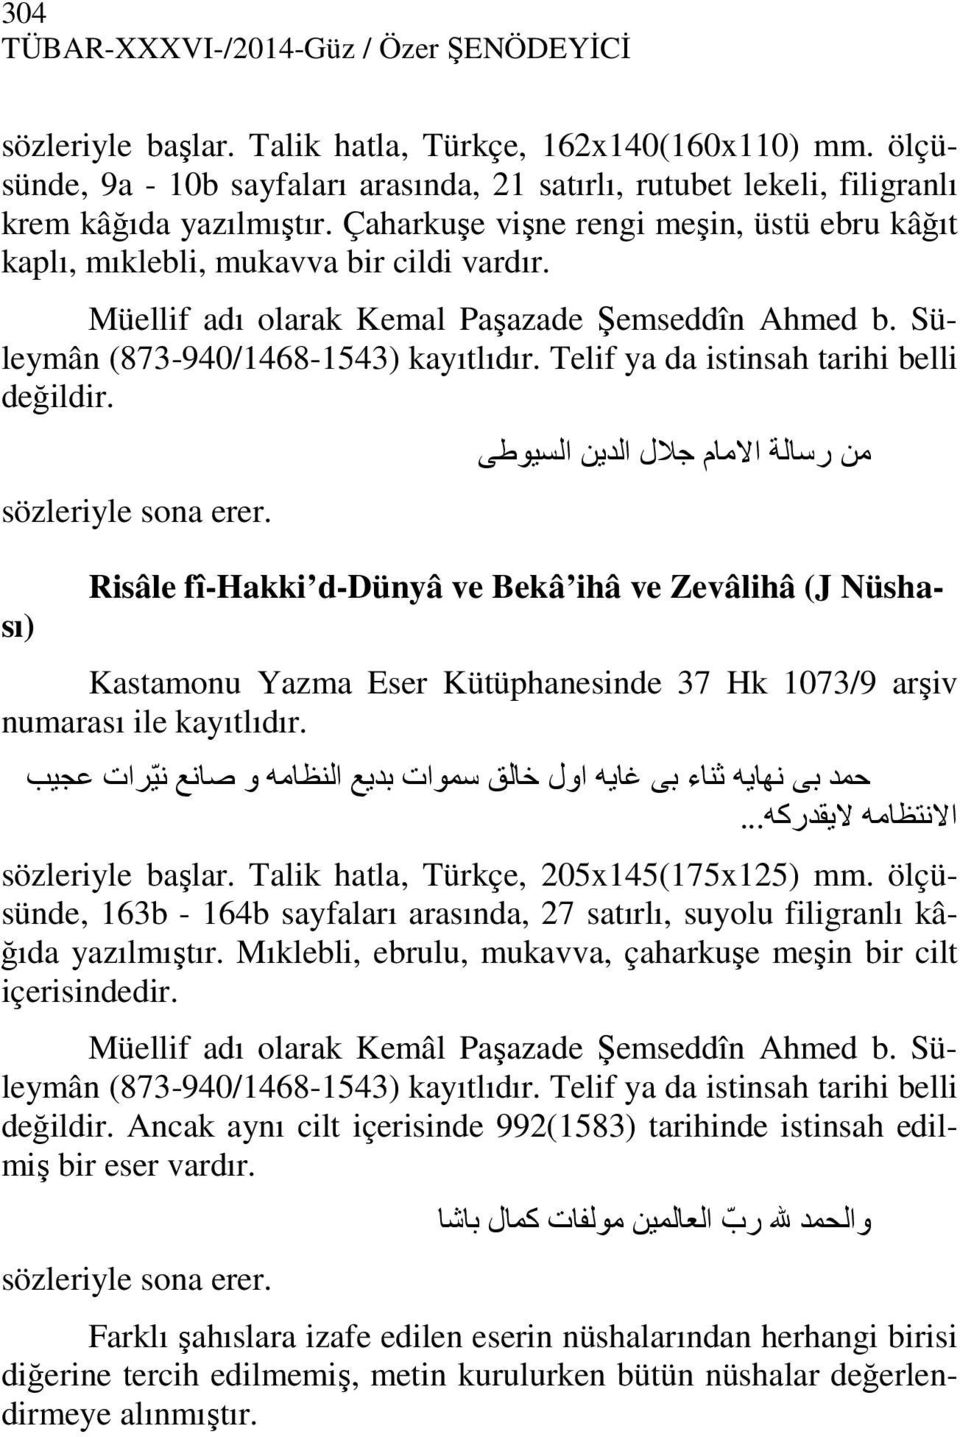 Müellif adı olarak Kemal Paşazade Şemseddîn Ahmed b. Süleymân (873-940/1468-1543) kayıtlıdır. Telif ya da istinsah tarihi belli değildir. sözleriyle sona erer.